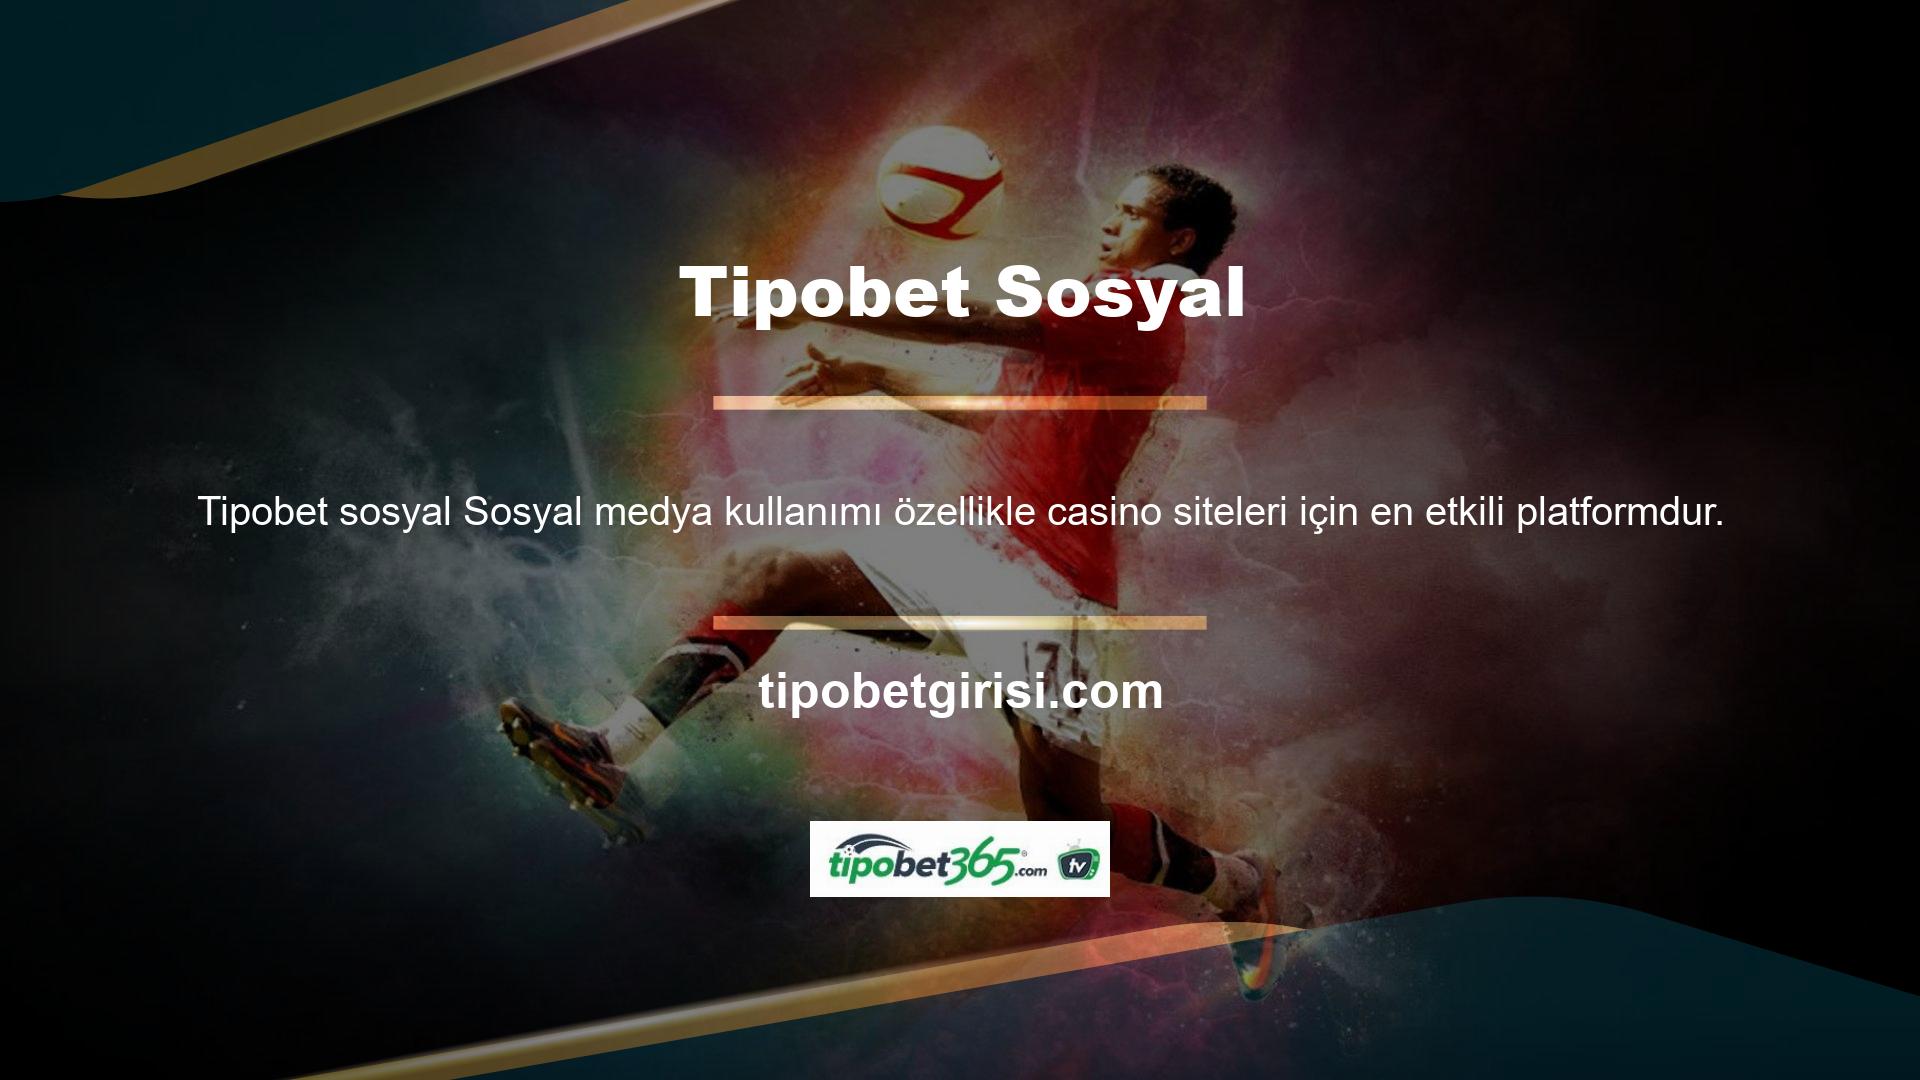 Tipobet, bu platformları kullanan en aktif casino sitesidir